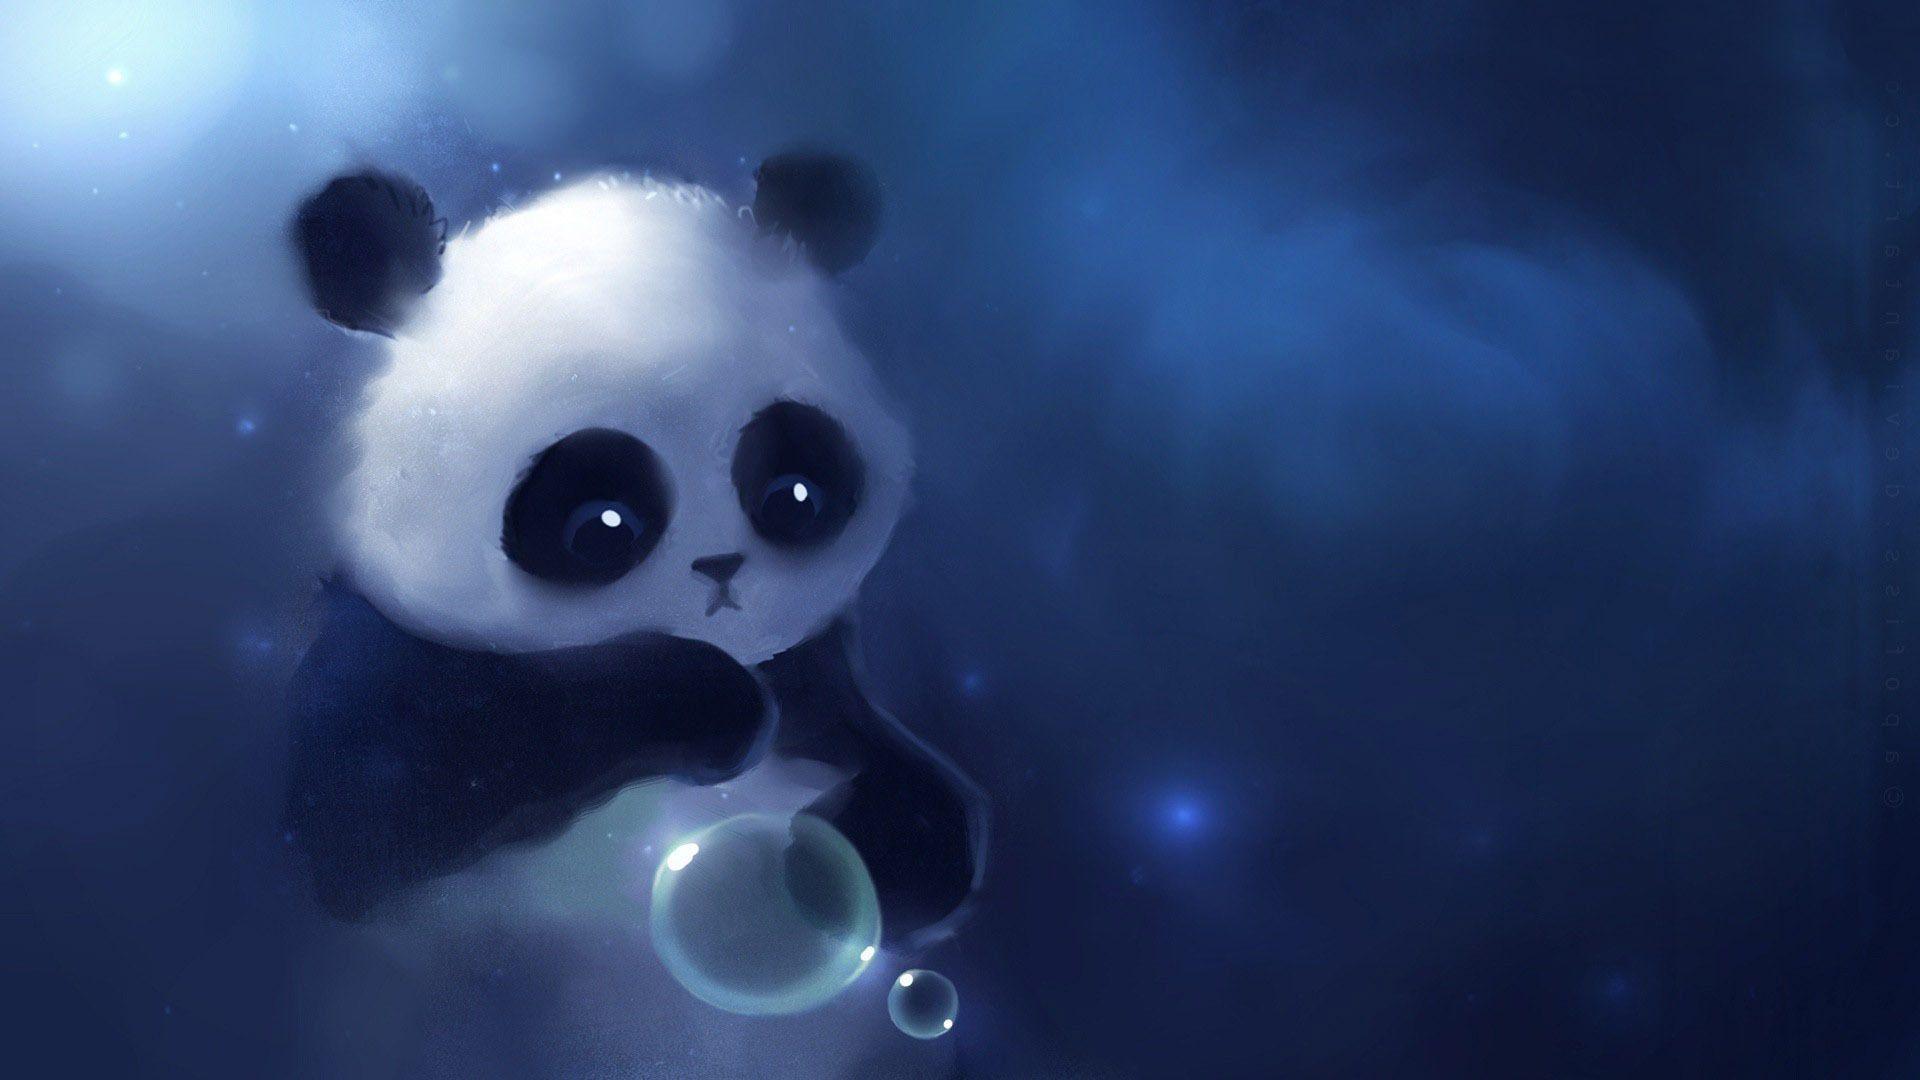 Free Download Cute Panda Wallpaper Tumblr. Wallpaper, Background, Image, Art Photo. Cute panda wallpaper, Panda background, Panda wallpaper